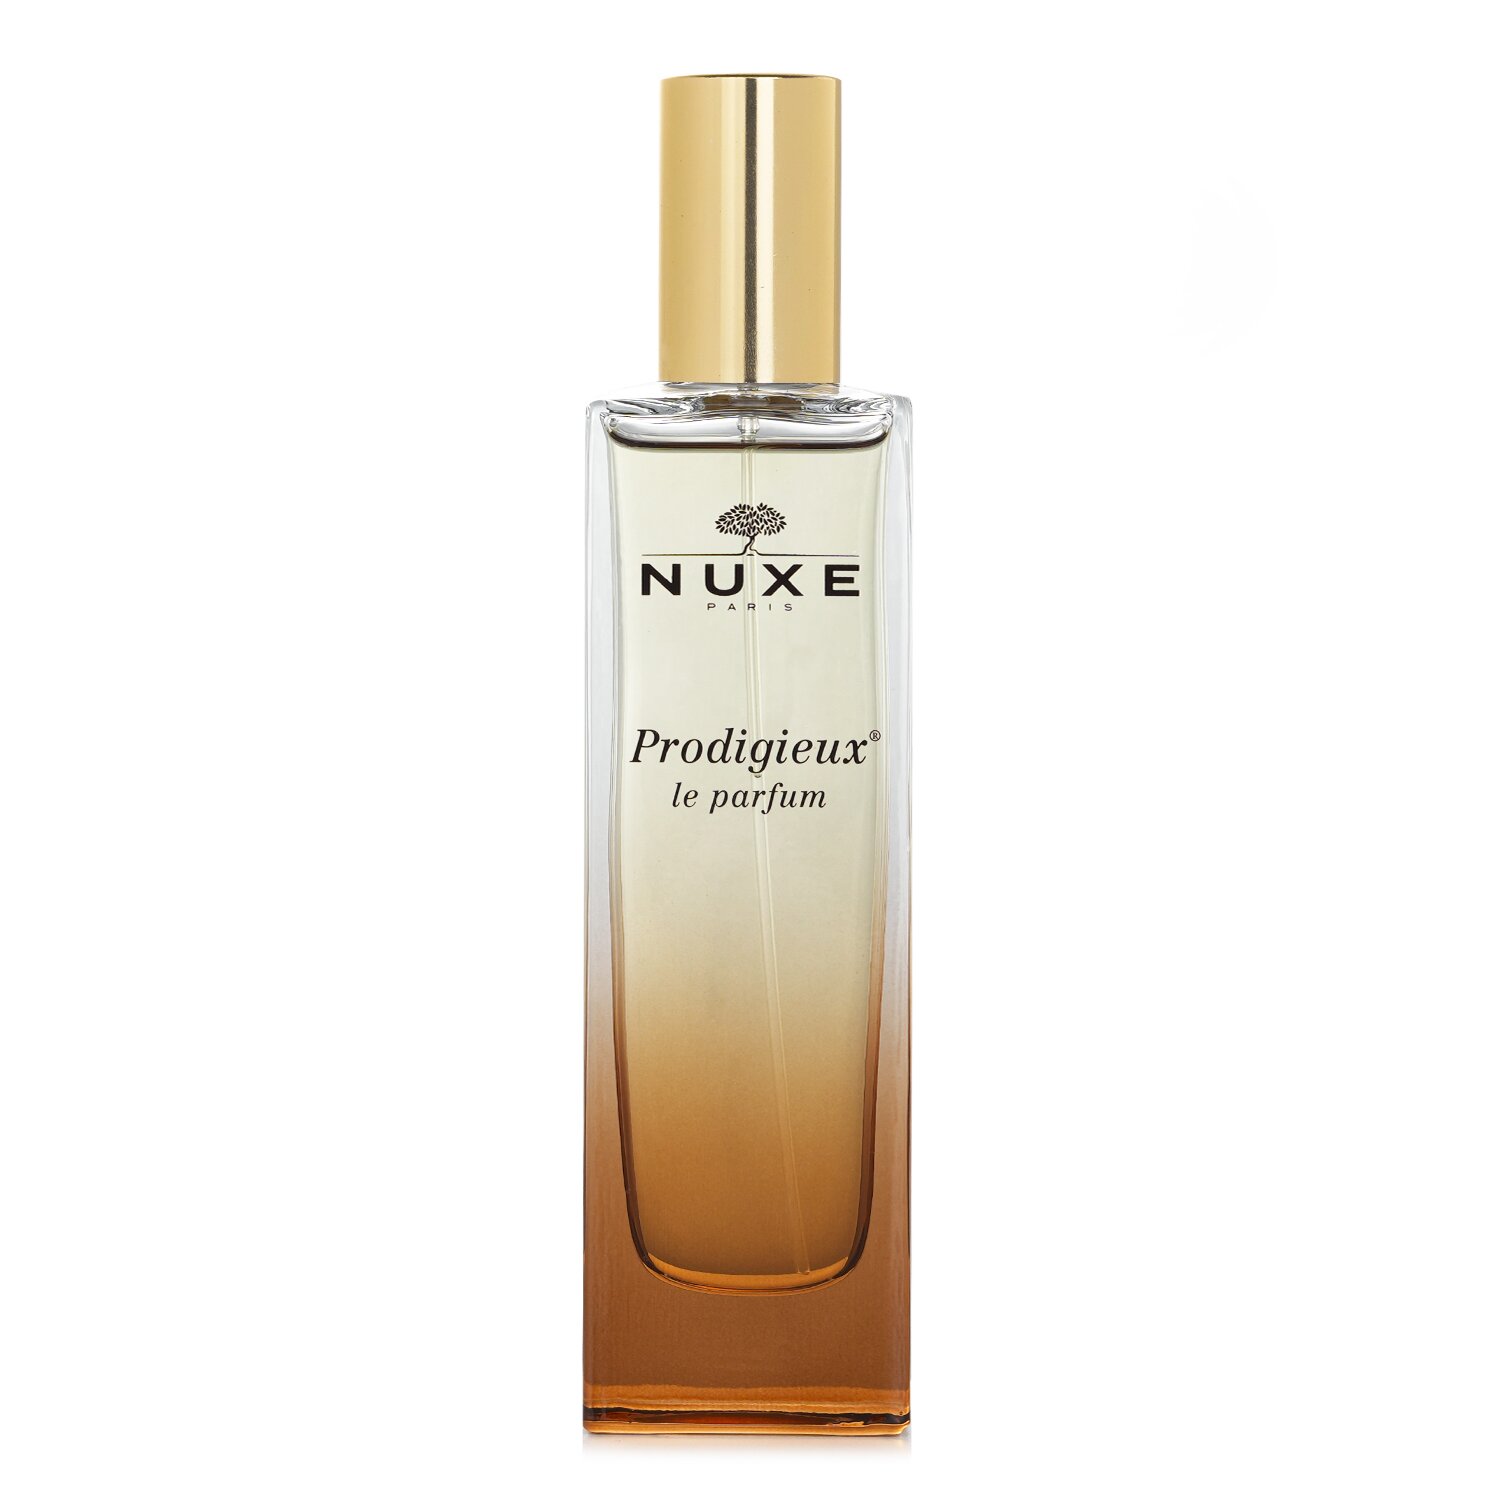 黎可詩 Nuxe - Prodigieux Le Parfum 晶亮魅力香水